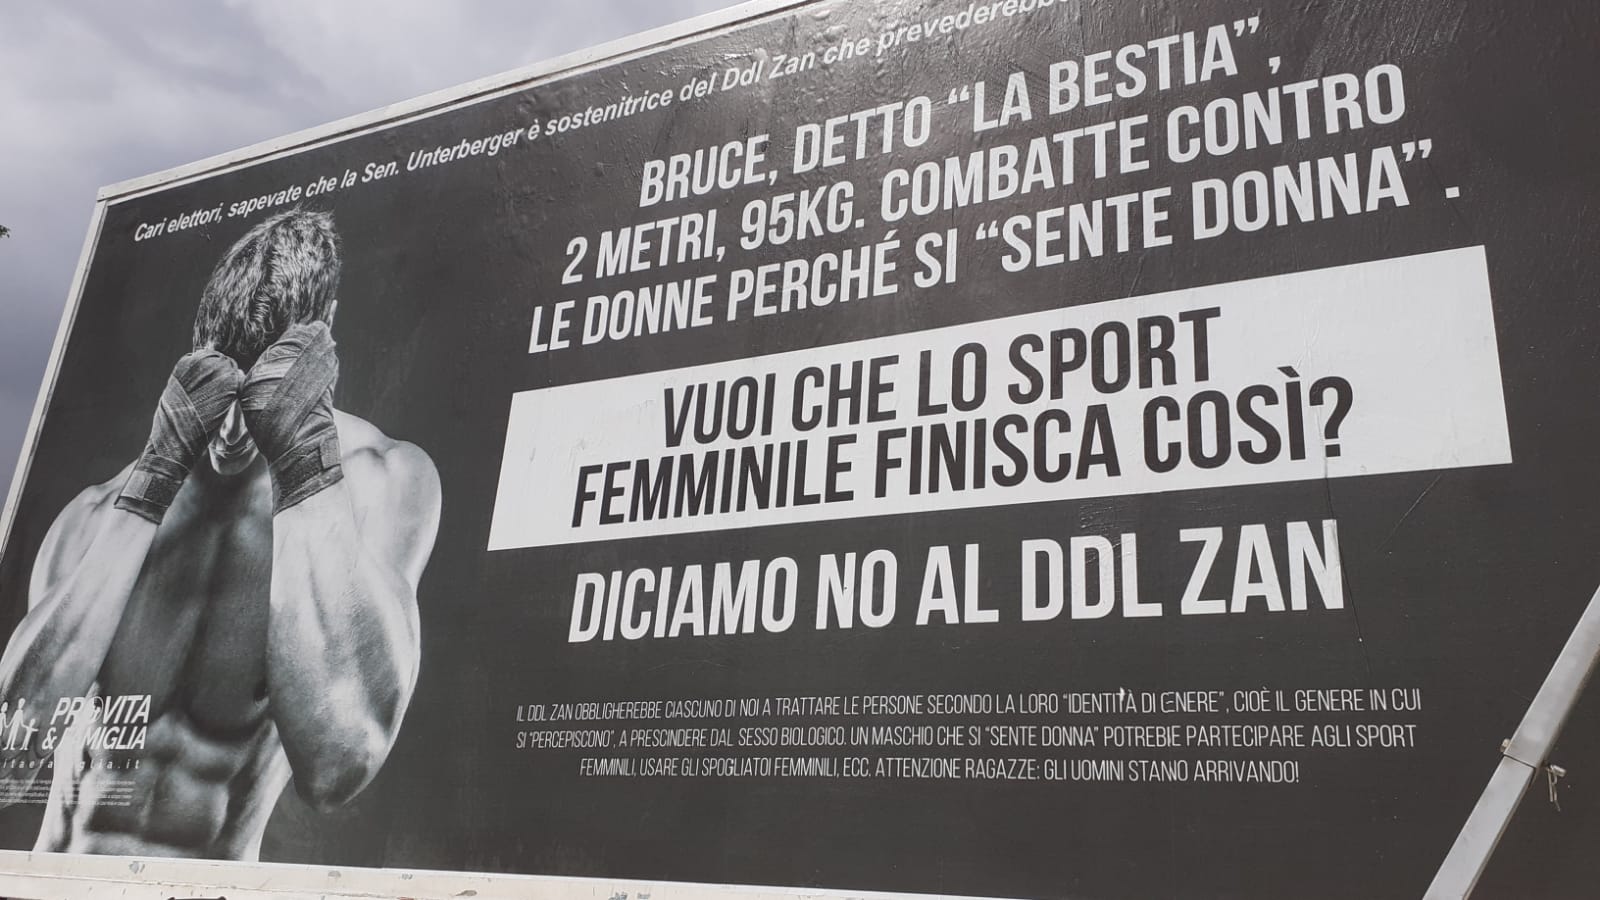 La campagna di Pro Vita & Famiglia contro il Ddl Zan arriva a Trento. Banchetti e camion vela con drag queen e casi choc nello sport 1